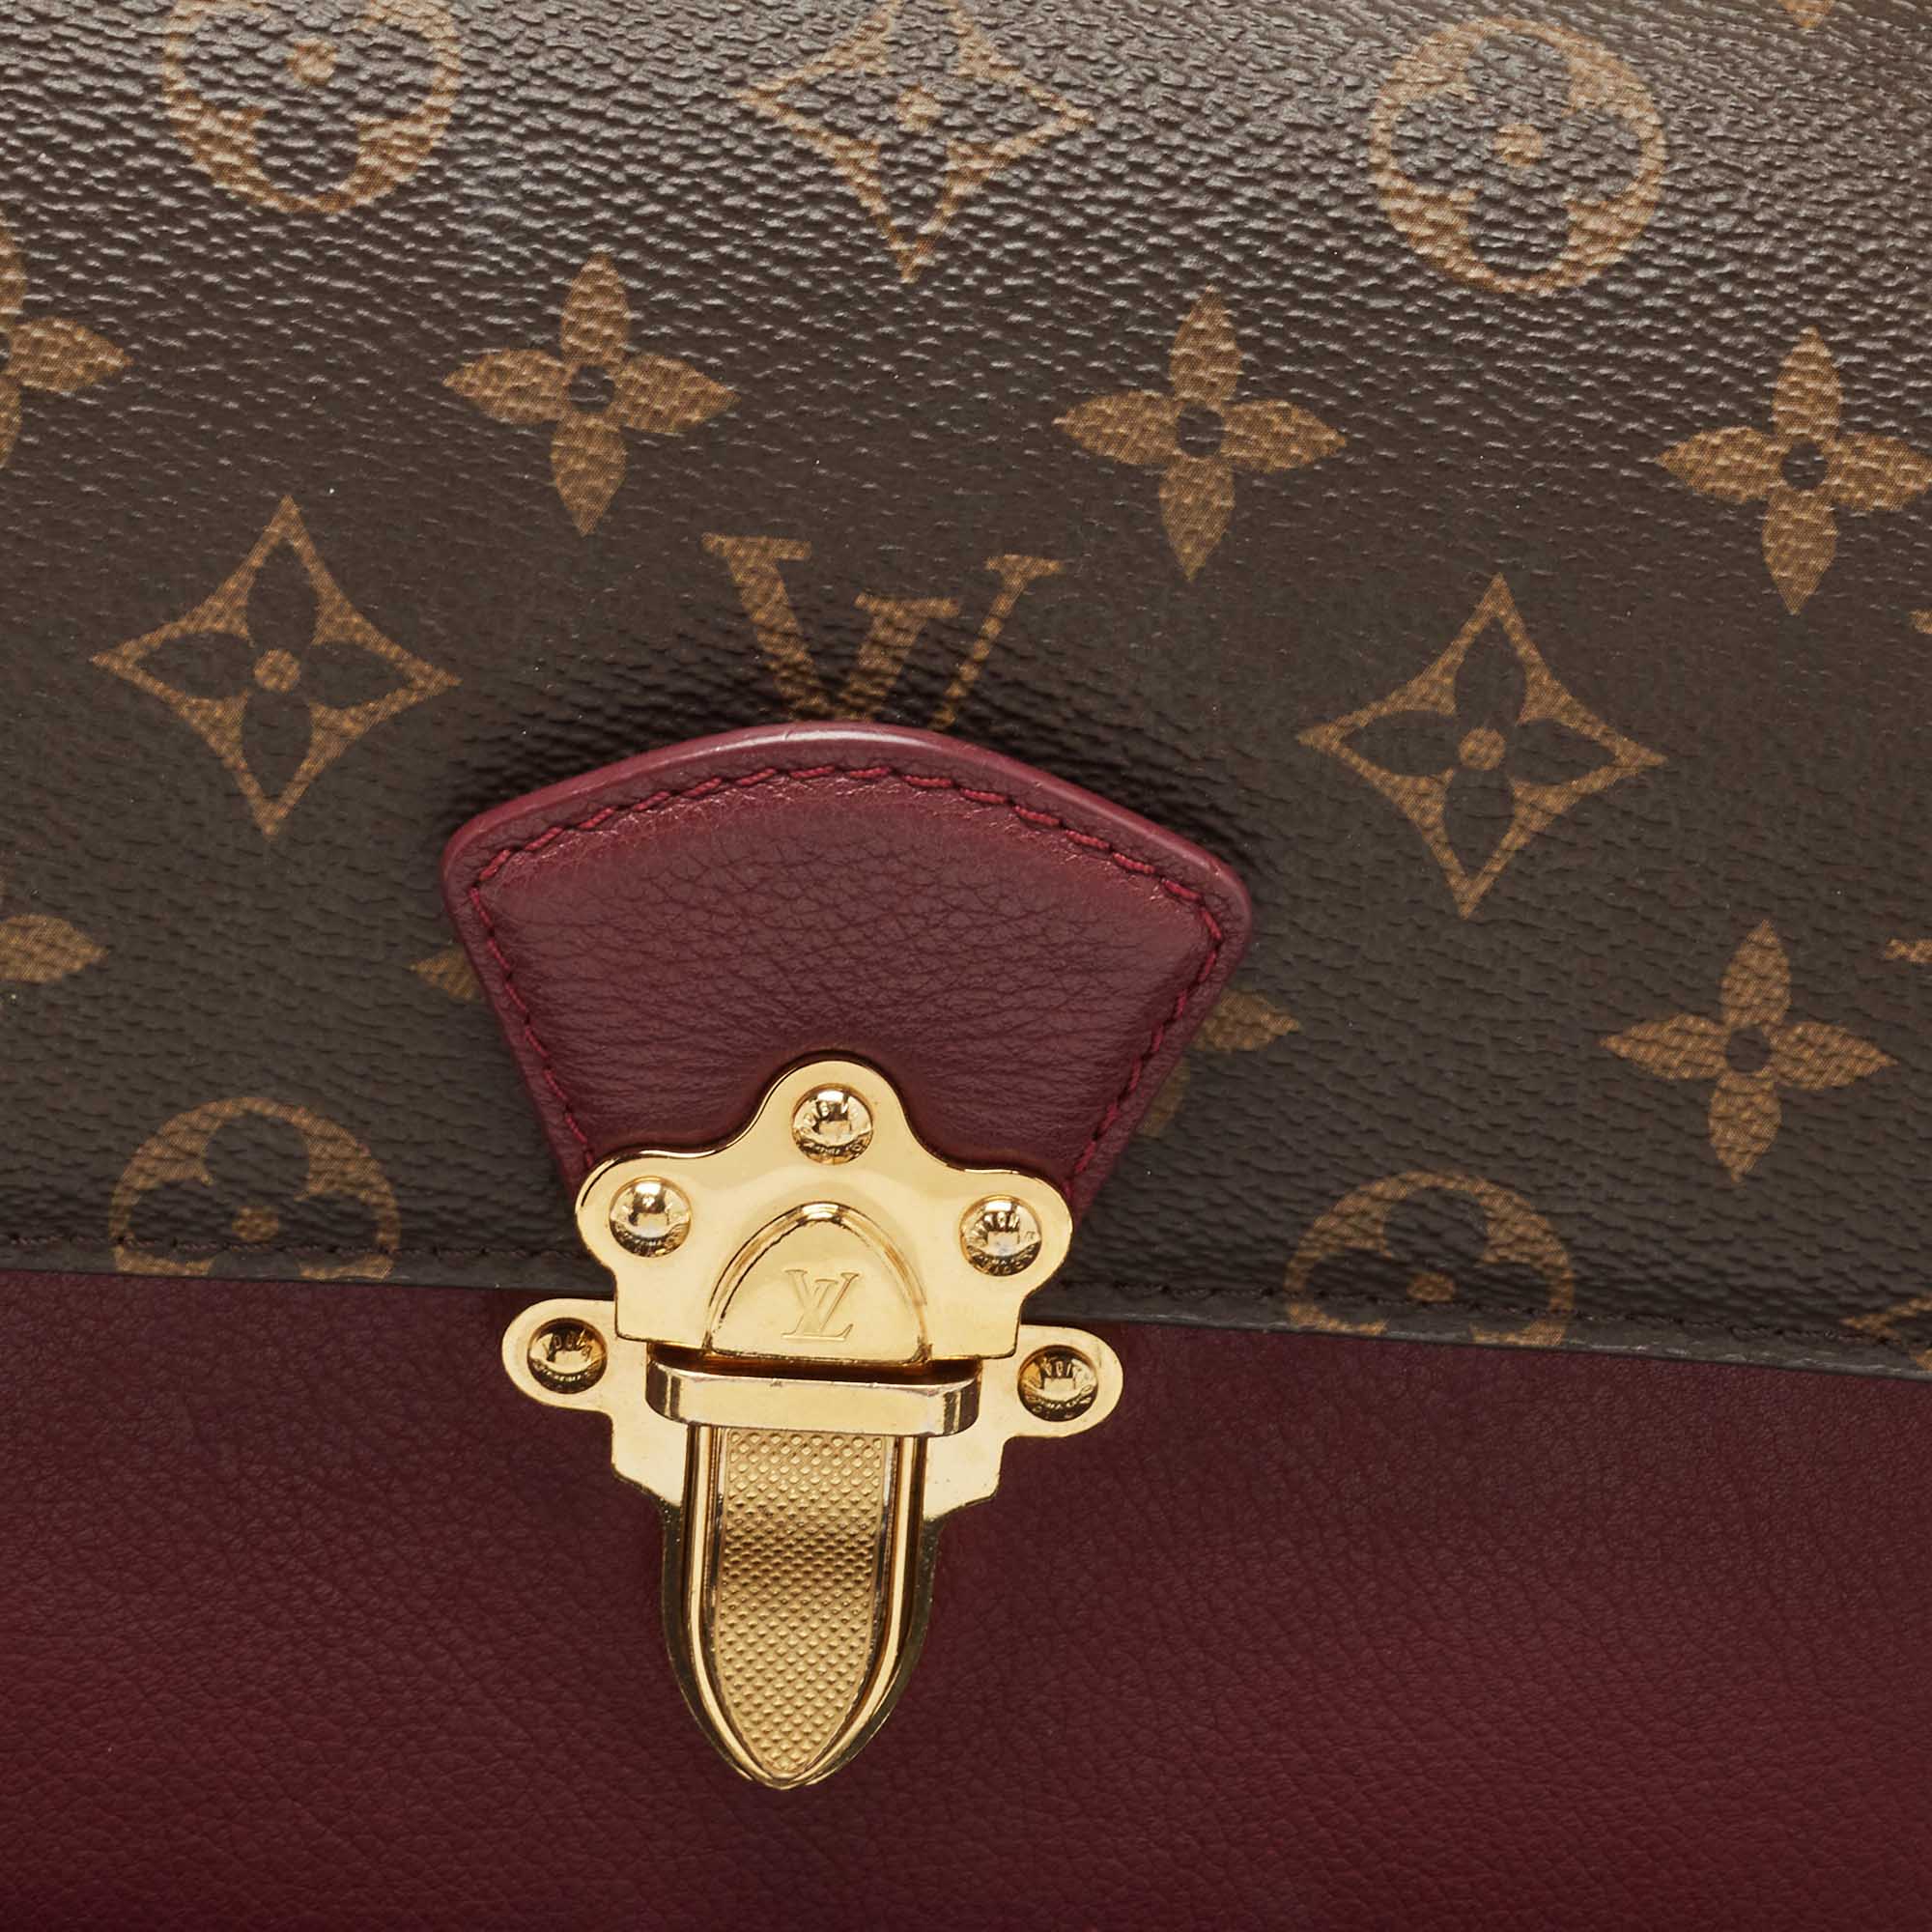 Louis Vuitton Victoire Bag